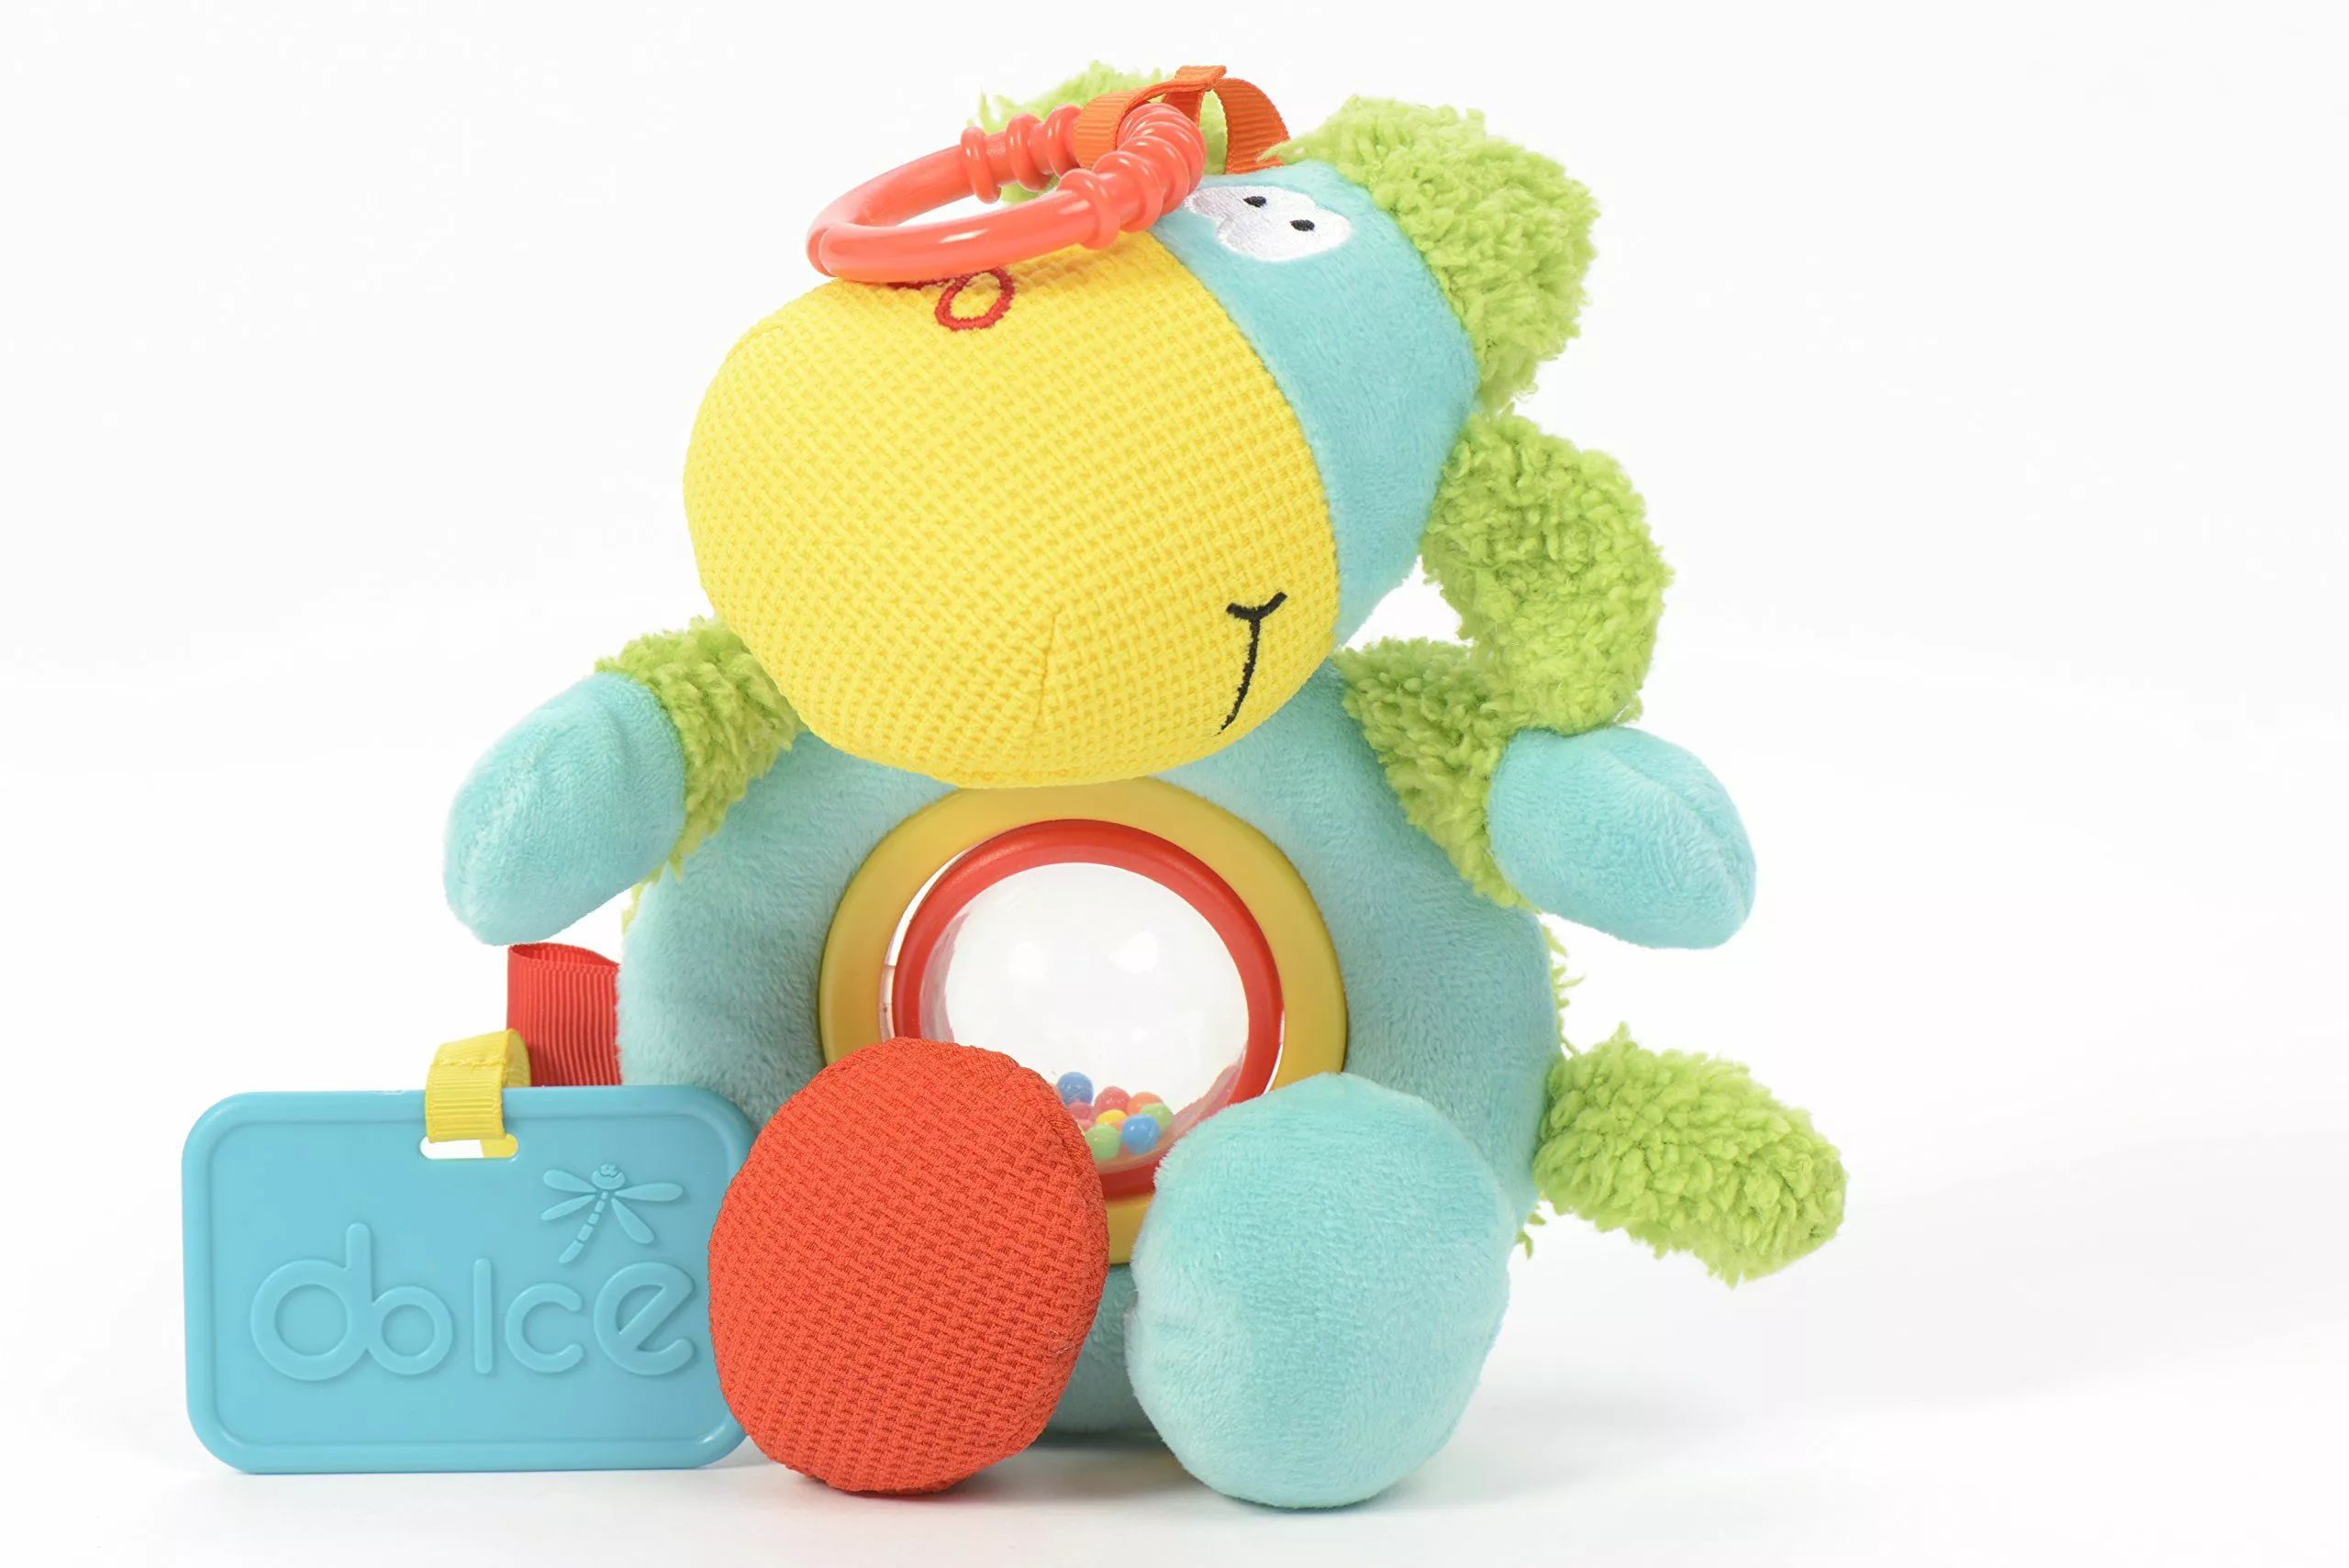 Dolce zabawki sensoryczne dla niemowląt